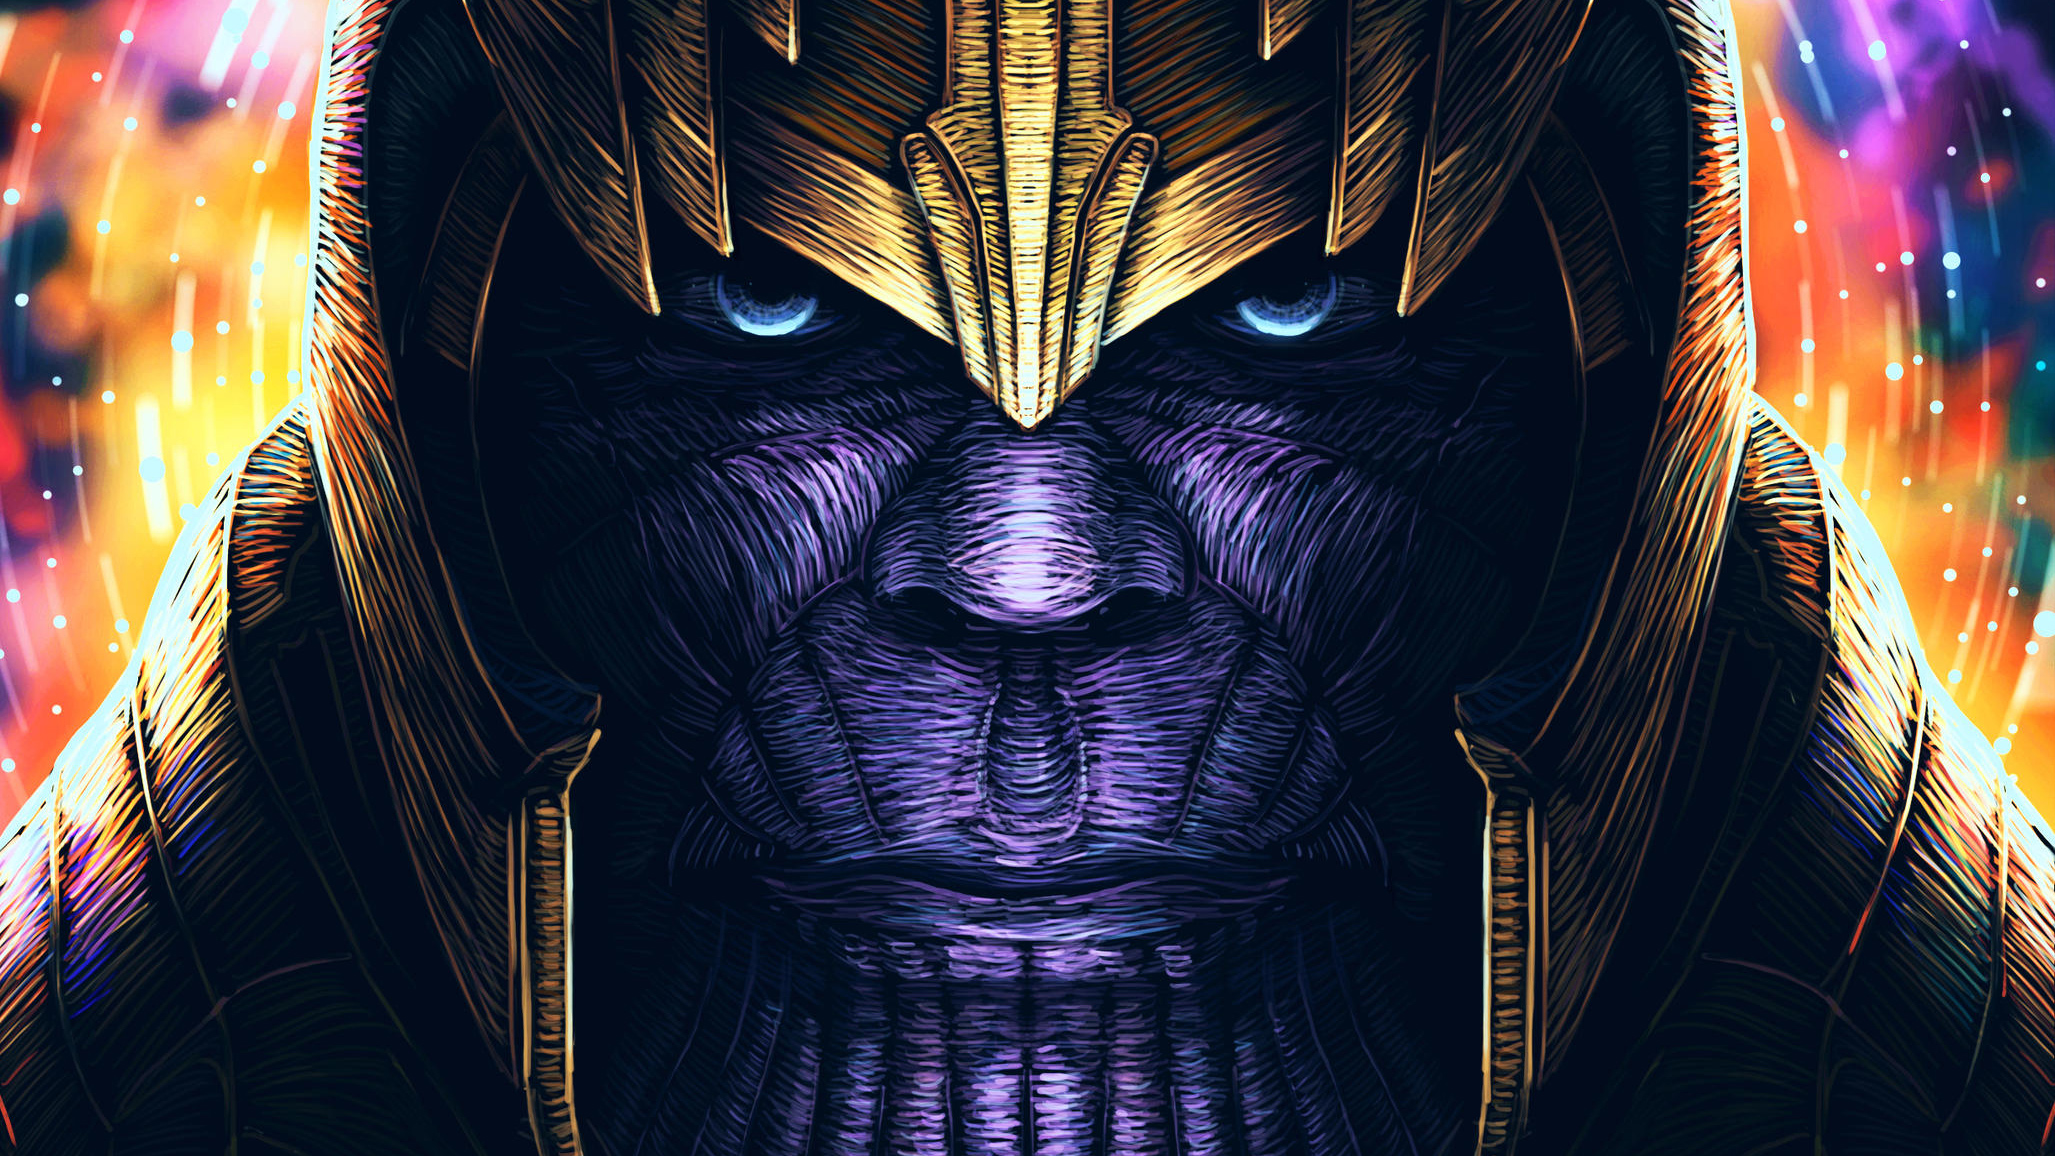 Hình ảnh tuyệt vời của Thanos